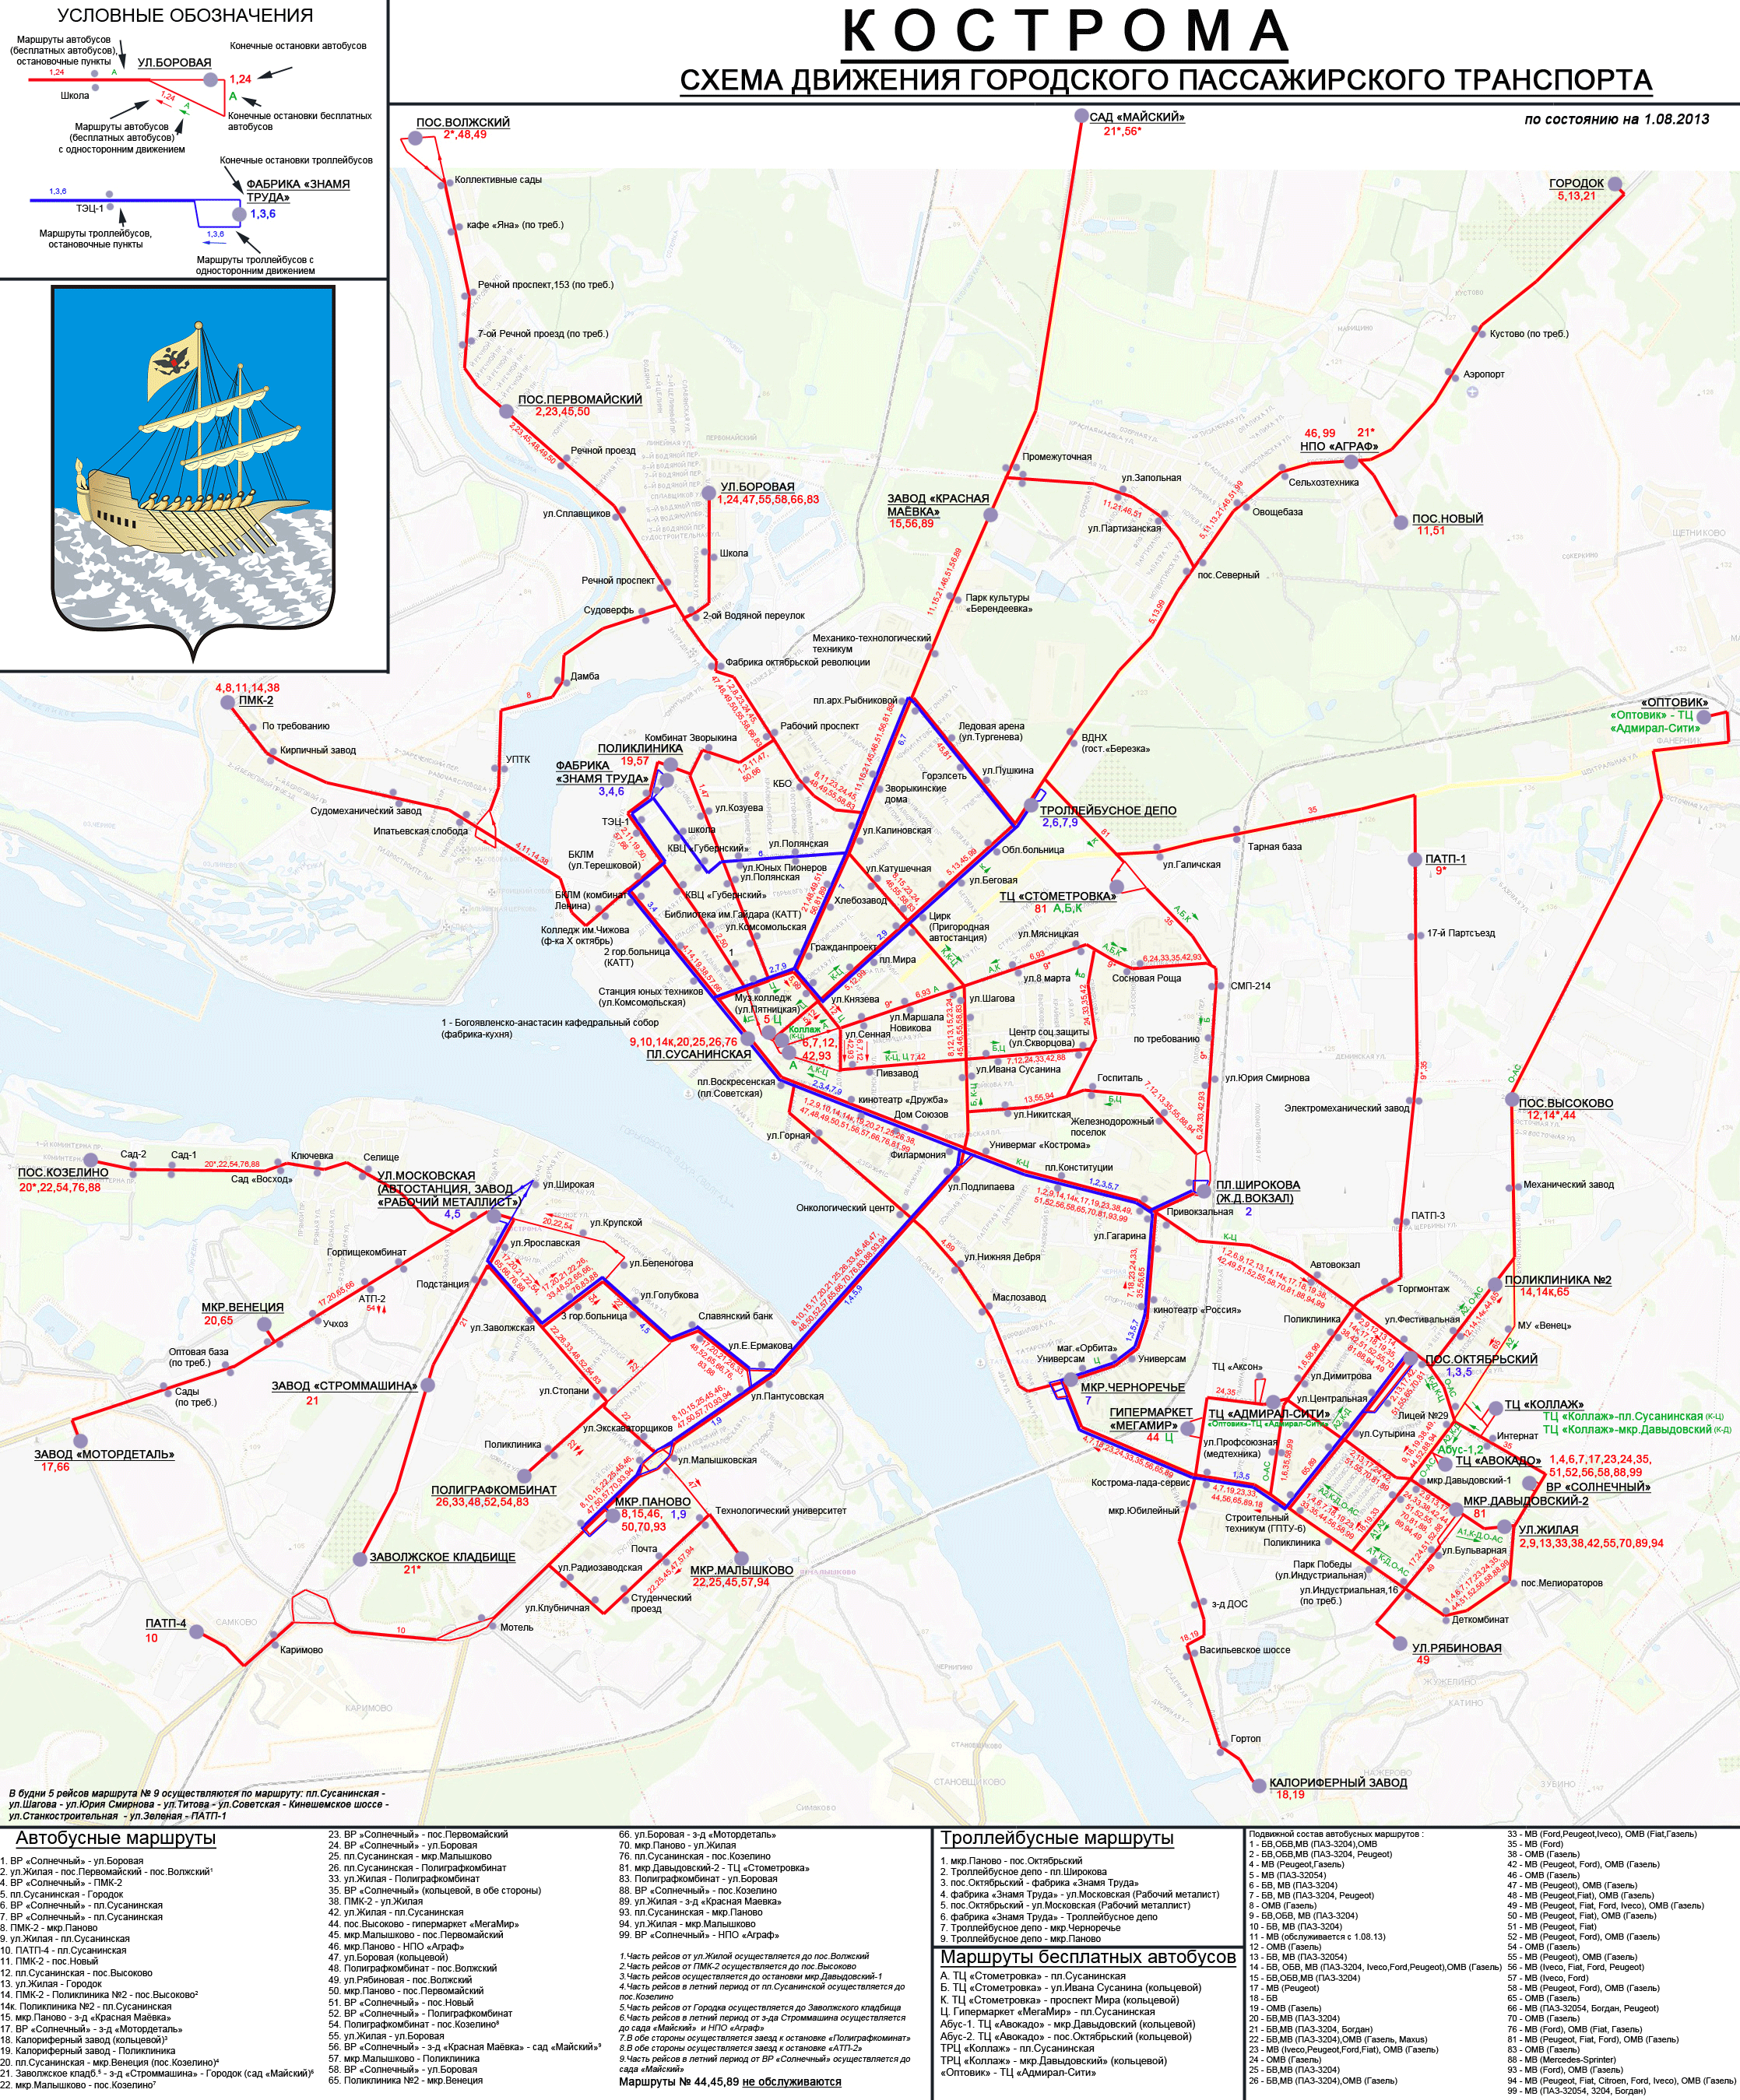 Kostroma — Maps